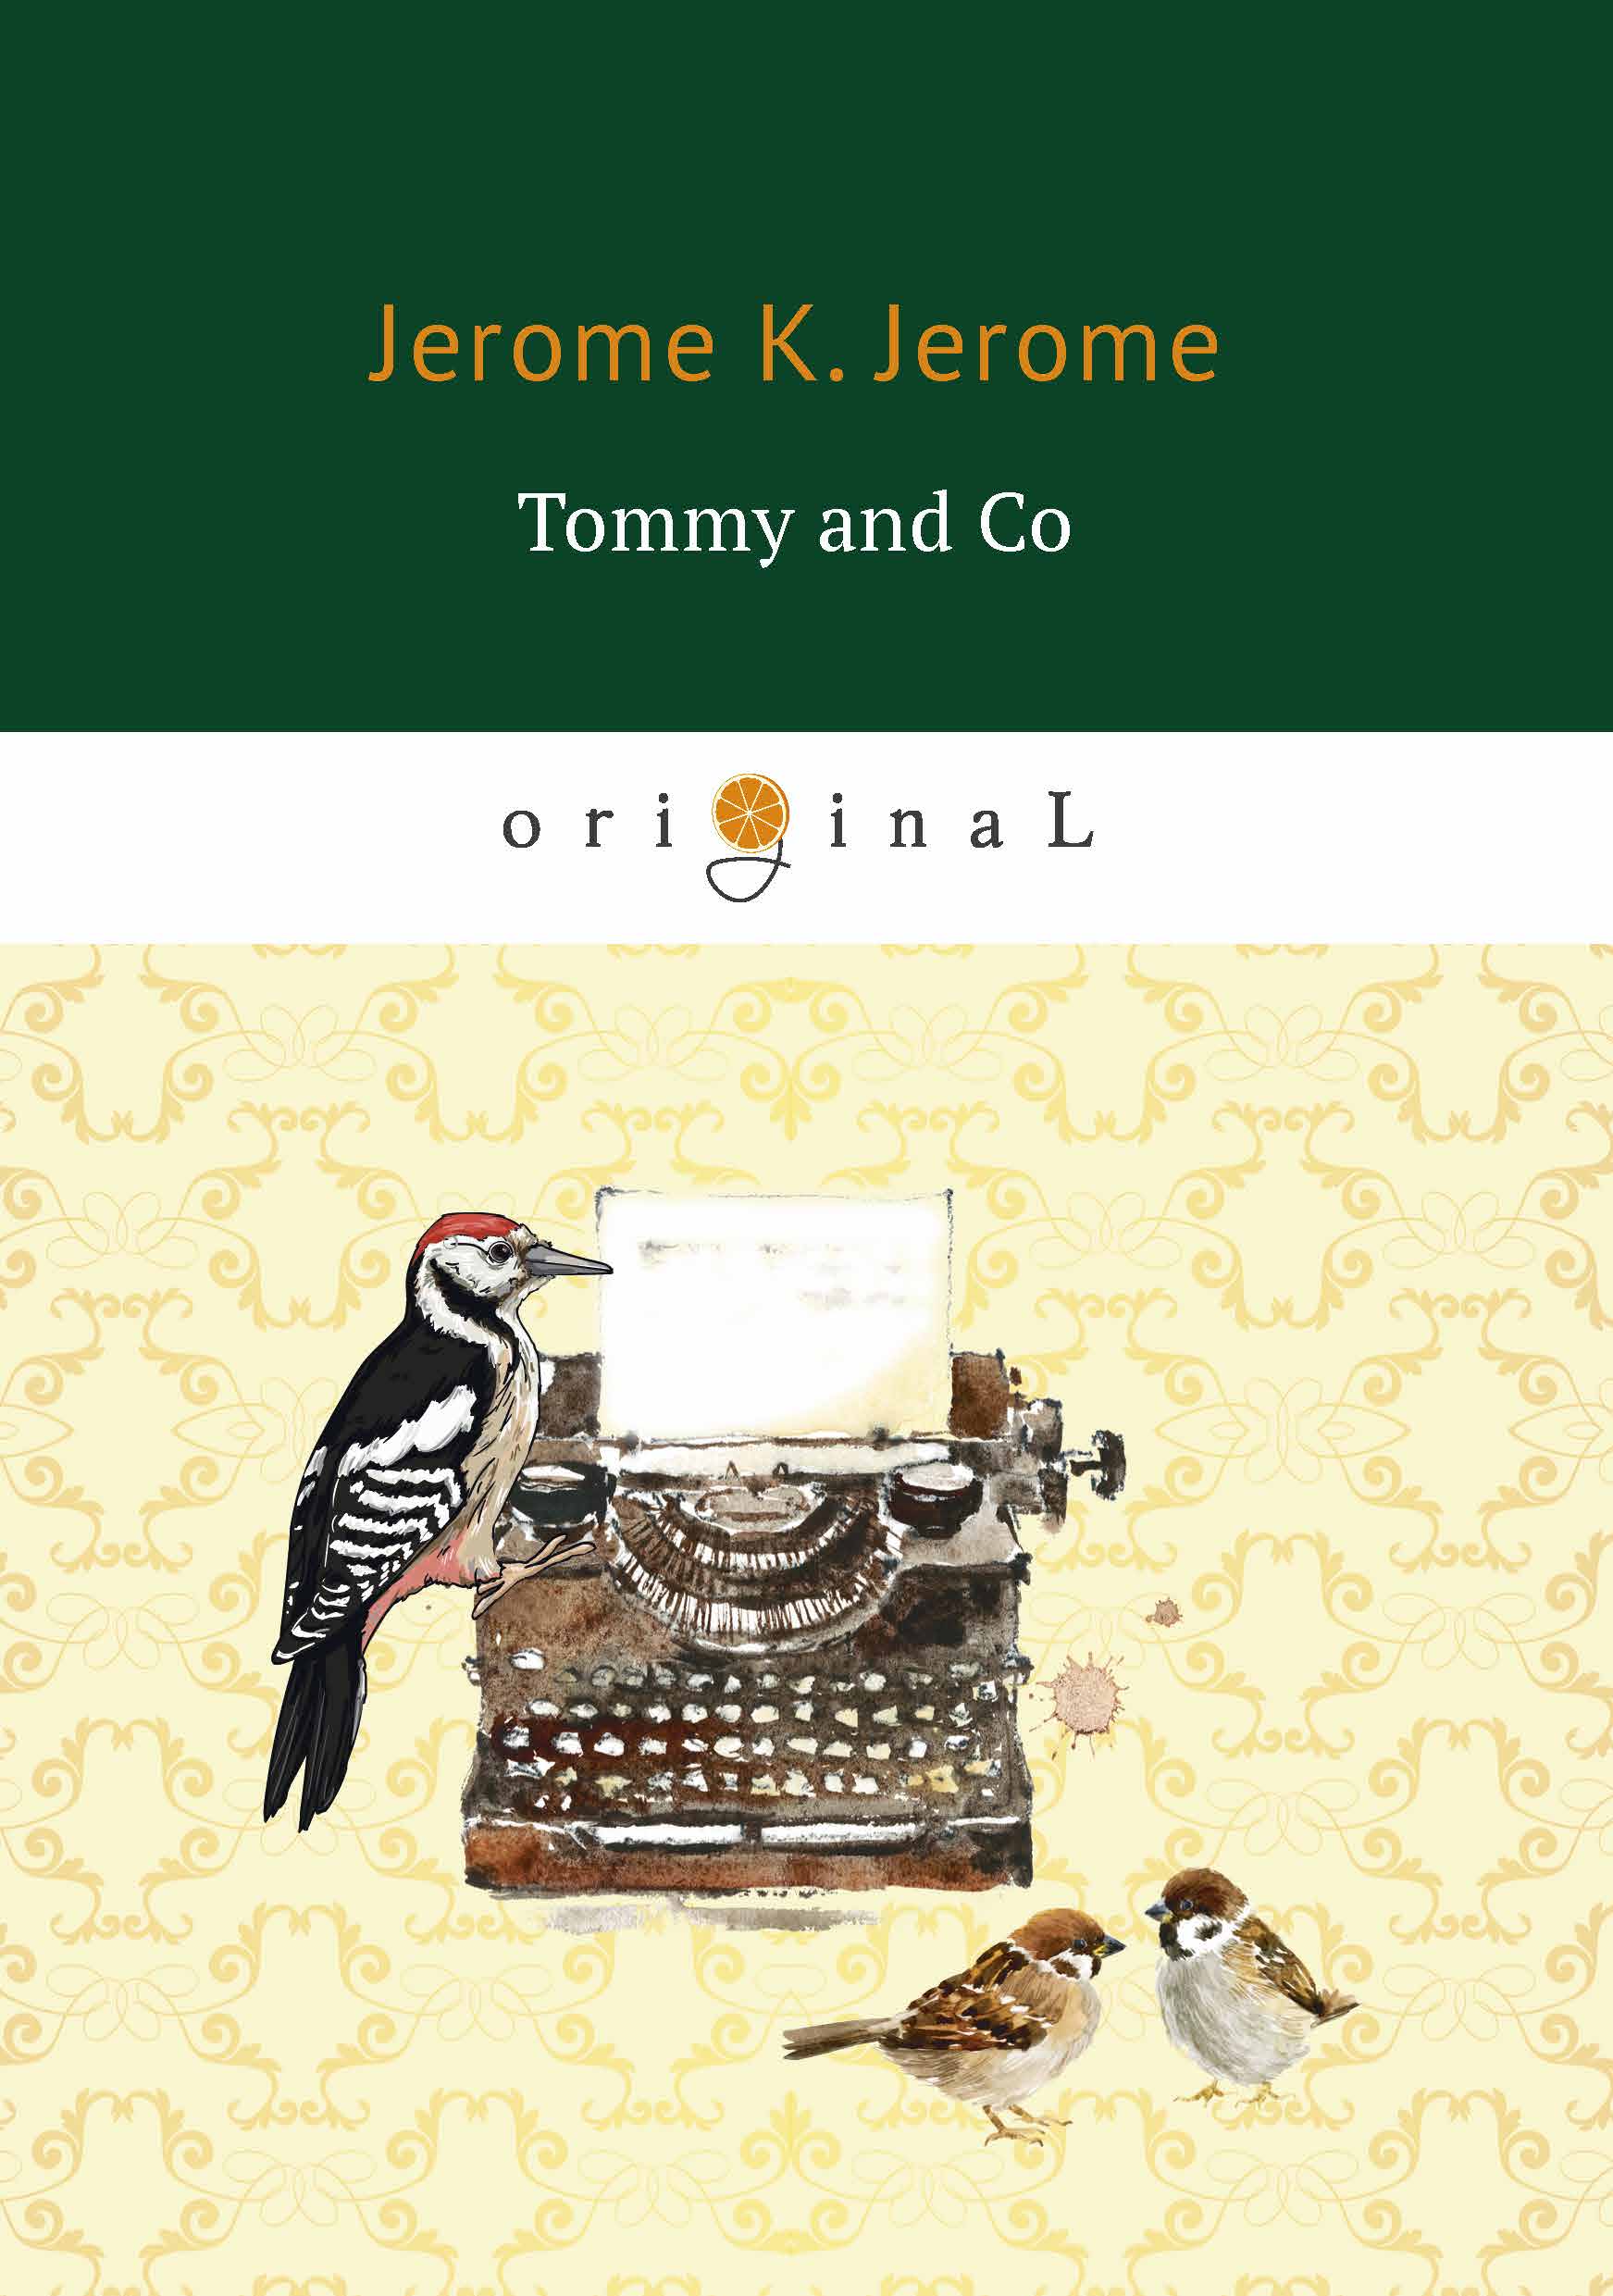 Tommy and Co. Jerome K. Jerome